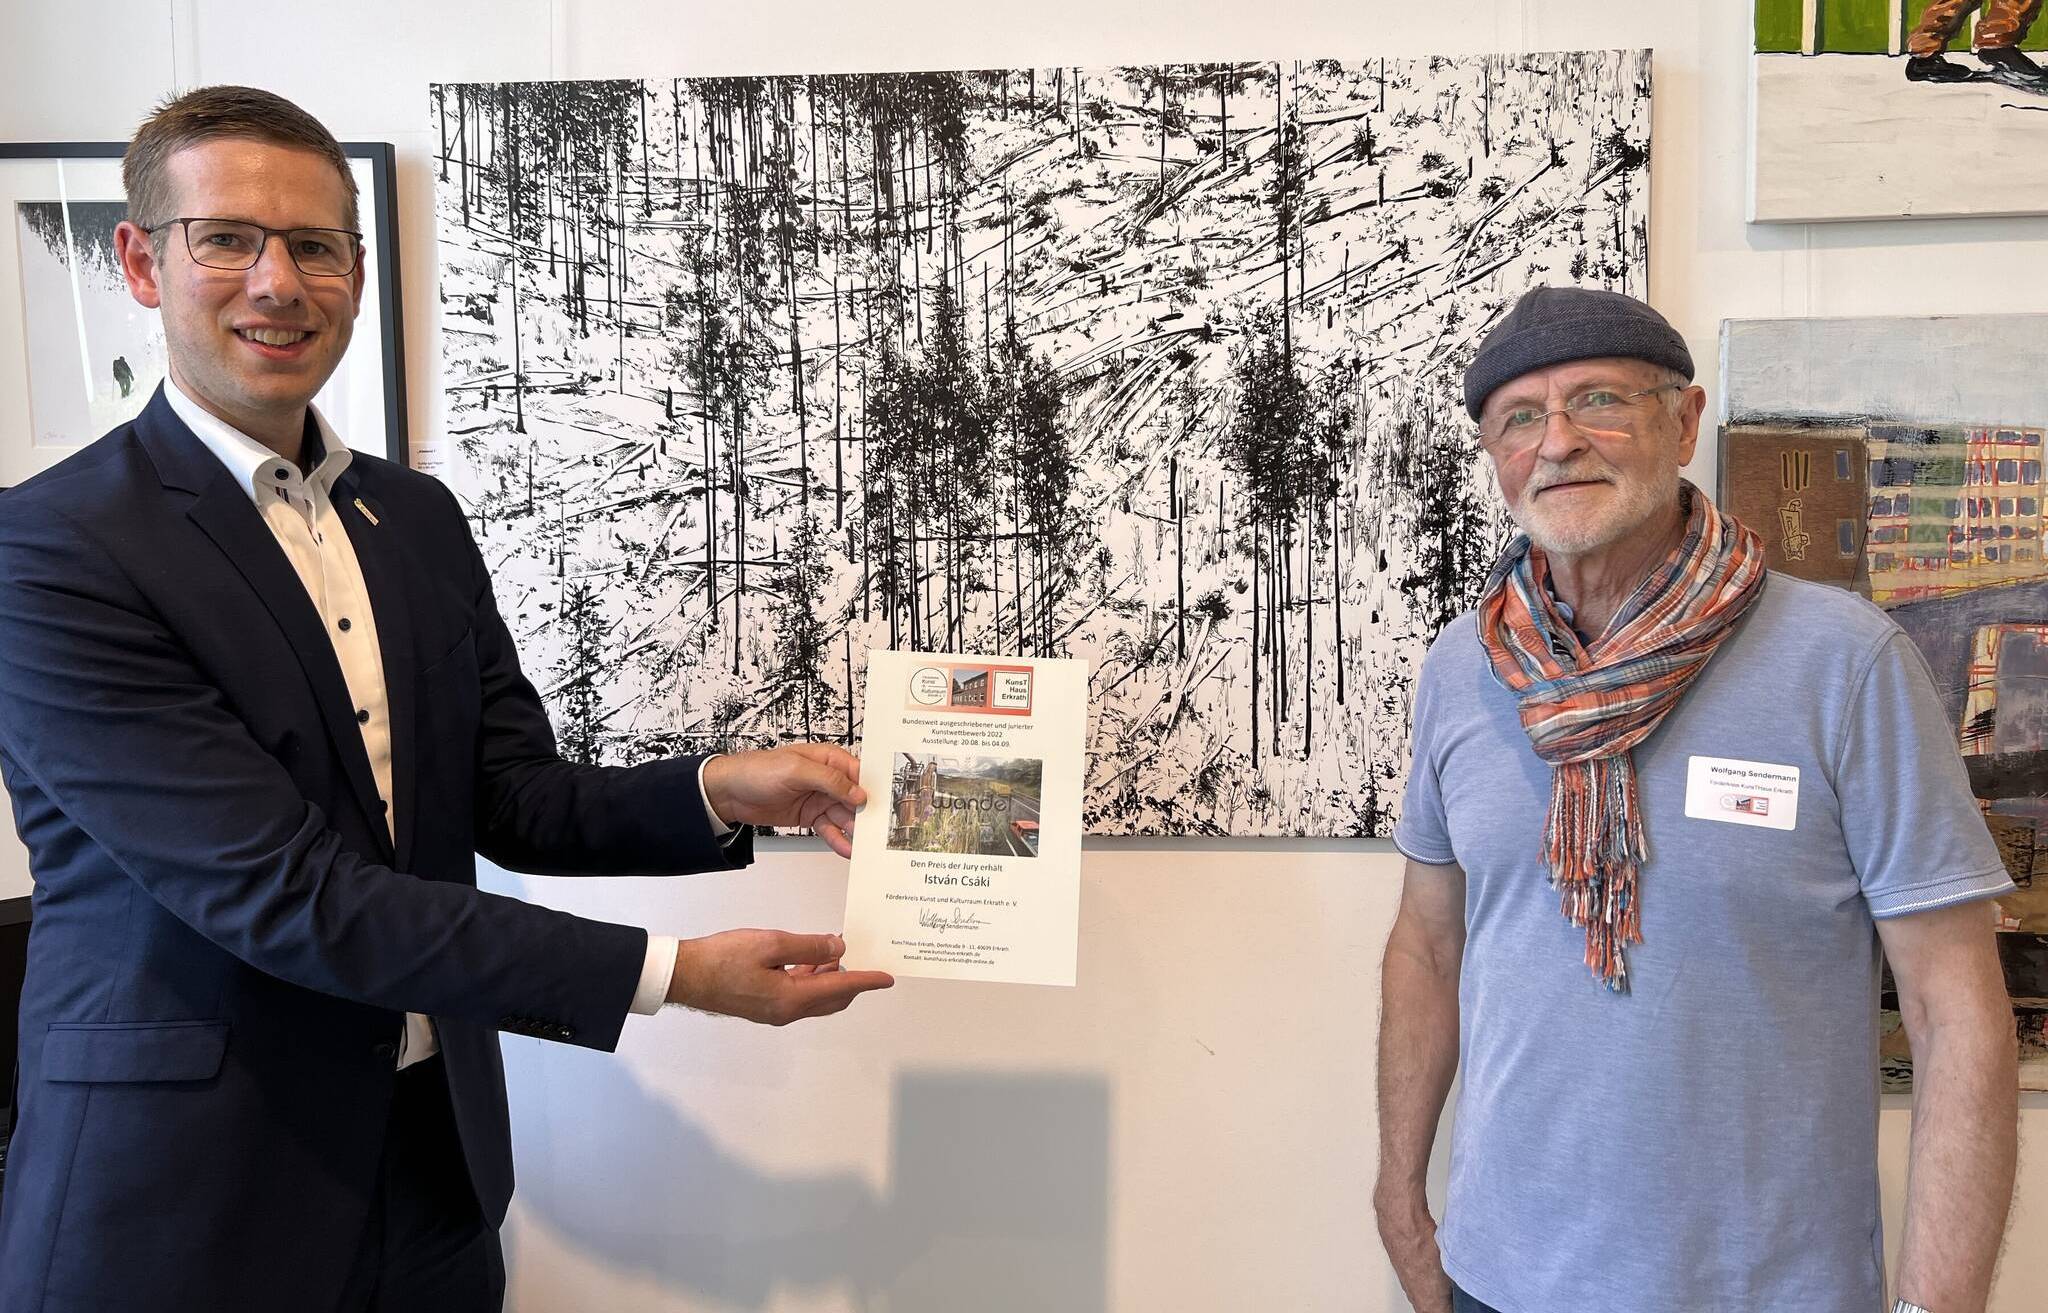  Bürgerneister Christooph Schultz (li.) zusammen mit Wolfgang Sendermann (Kunsthaus Erkrath) und der Urkunde zum Jurypreis an den Künstler István Csáki. 